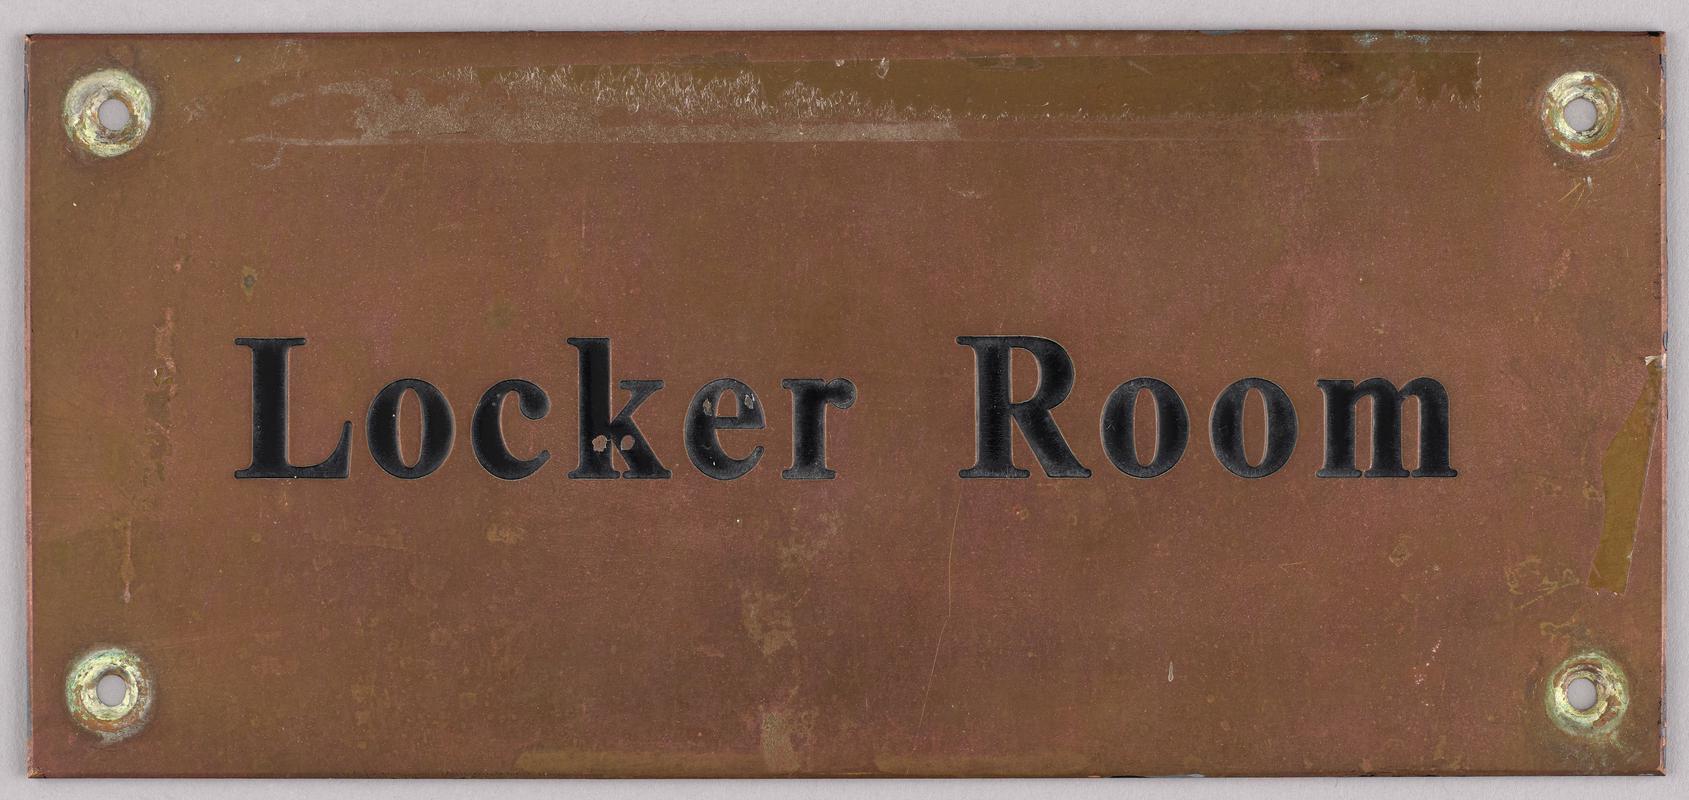 Locker Room brass sign